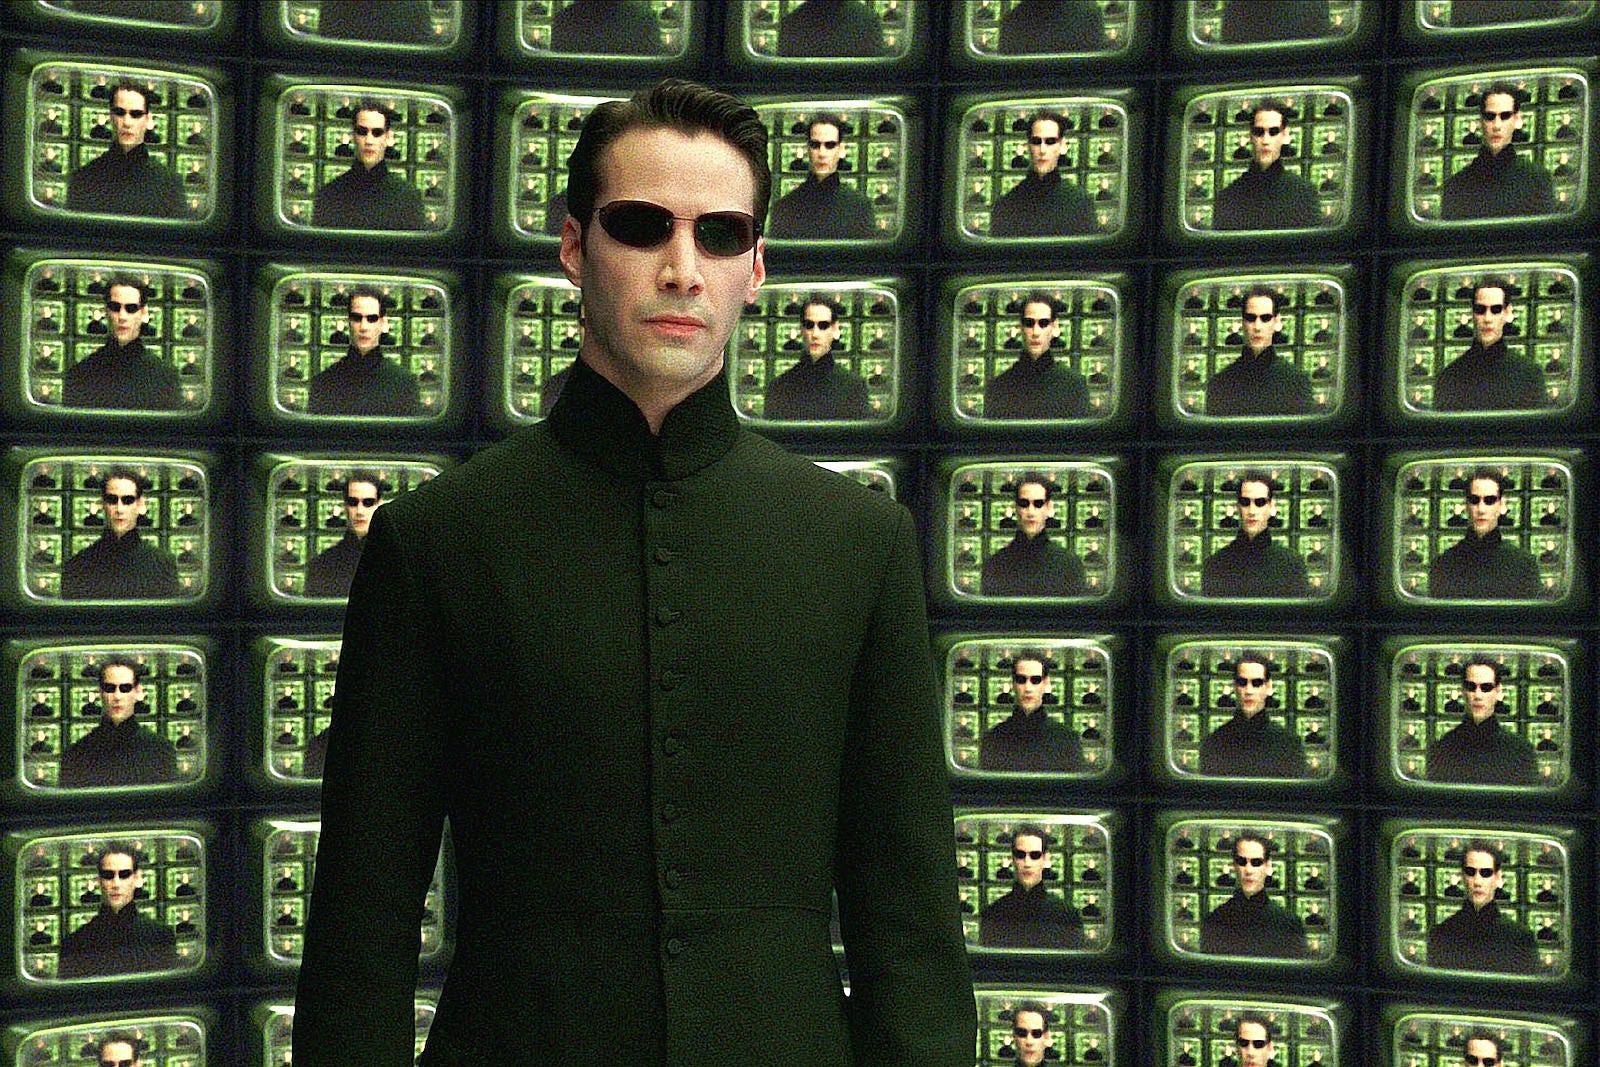 Agent Smith, Matrix Wiki